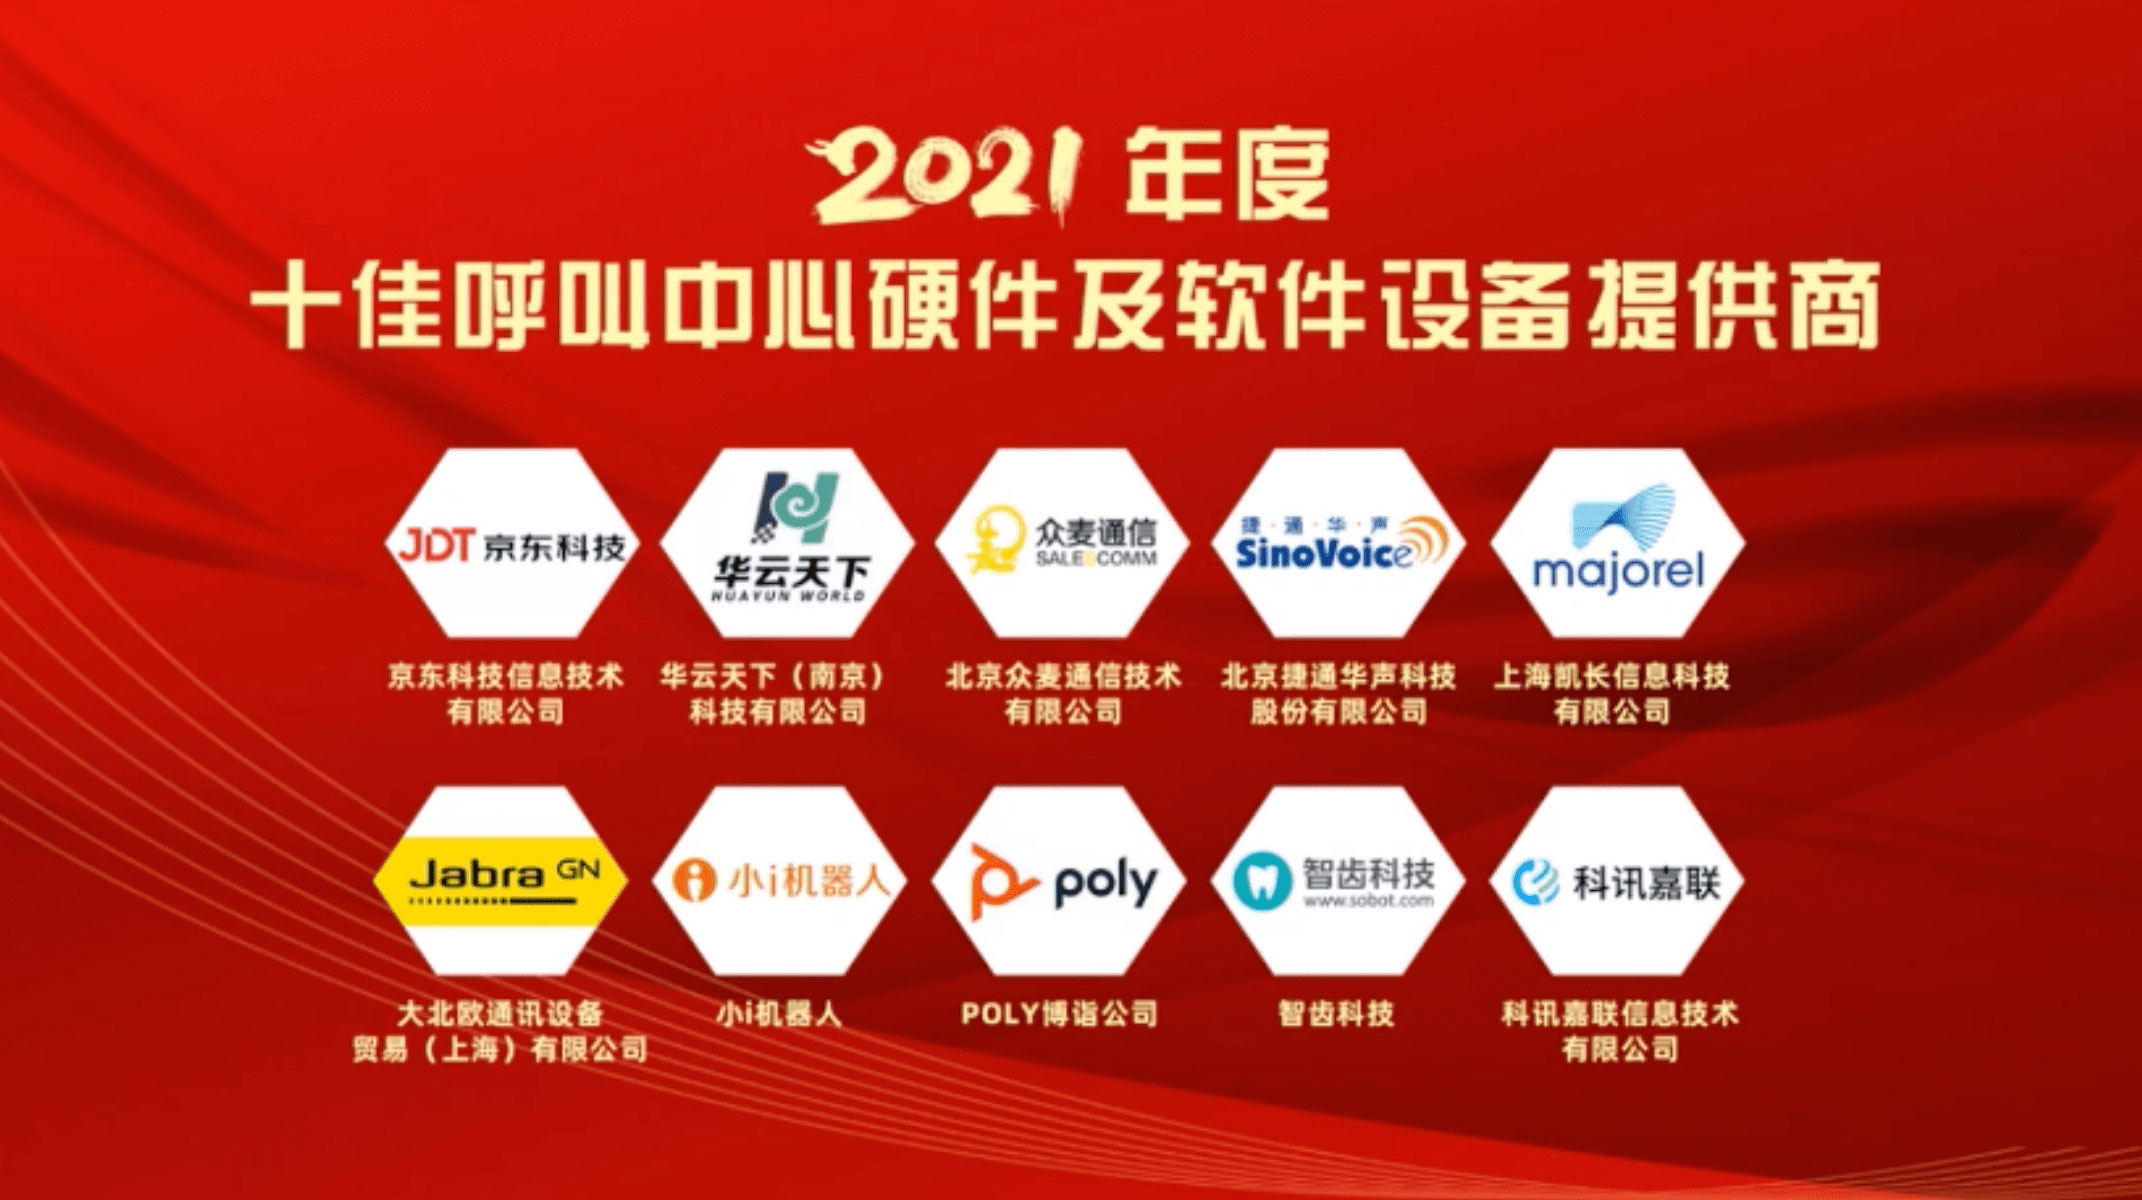 华云天下荣膺“2021年度十佳呼叫中心硬件及软件设备供应商”